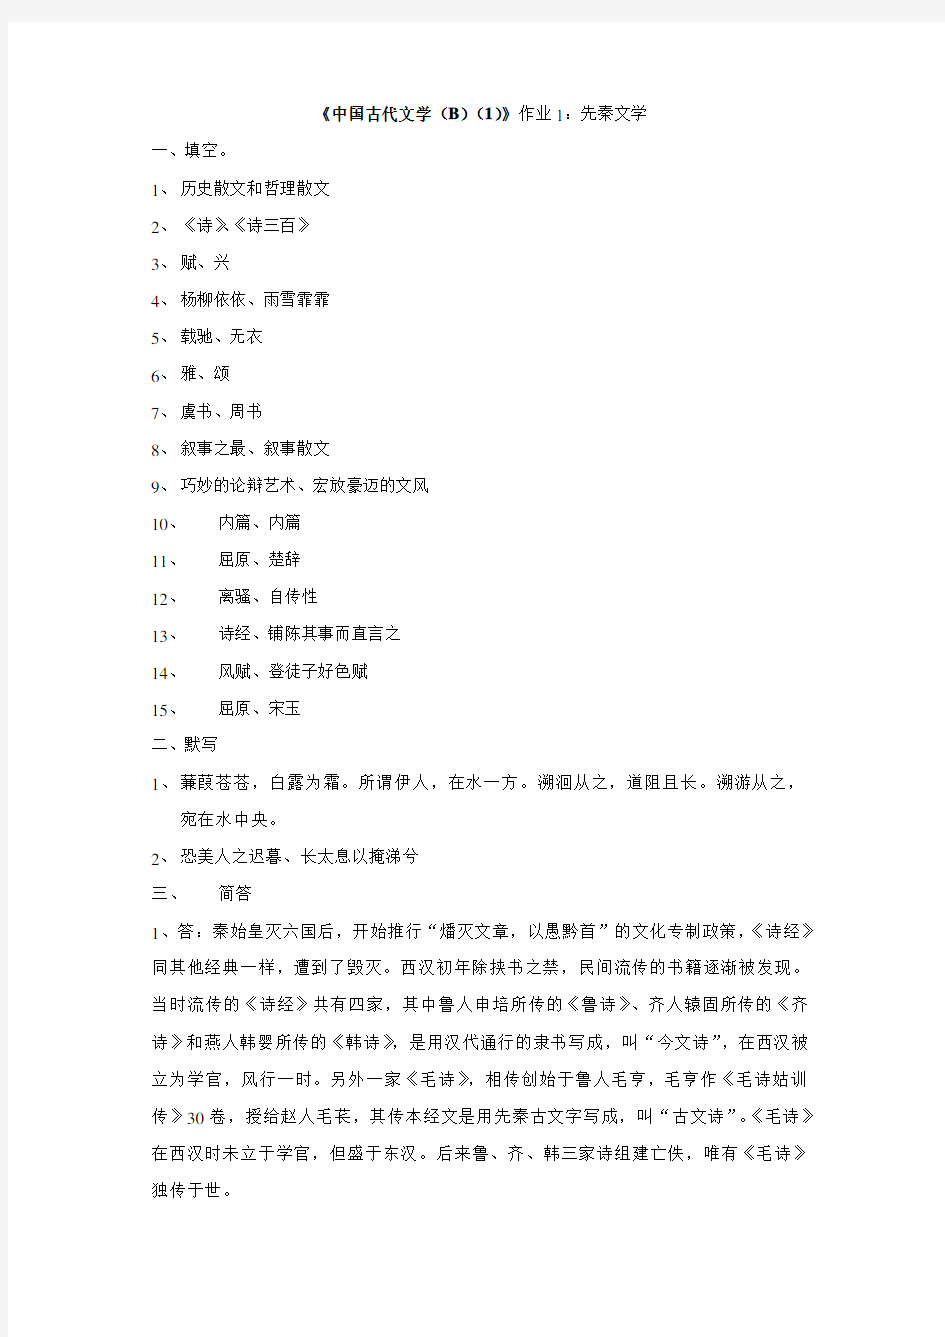 中国古代文学(B)(1)形成性考核册之作业1-4答案